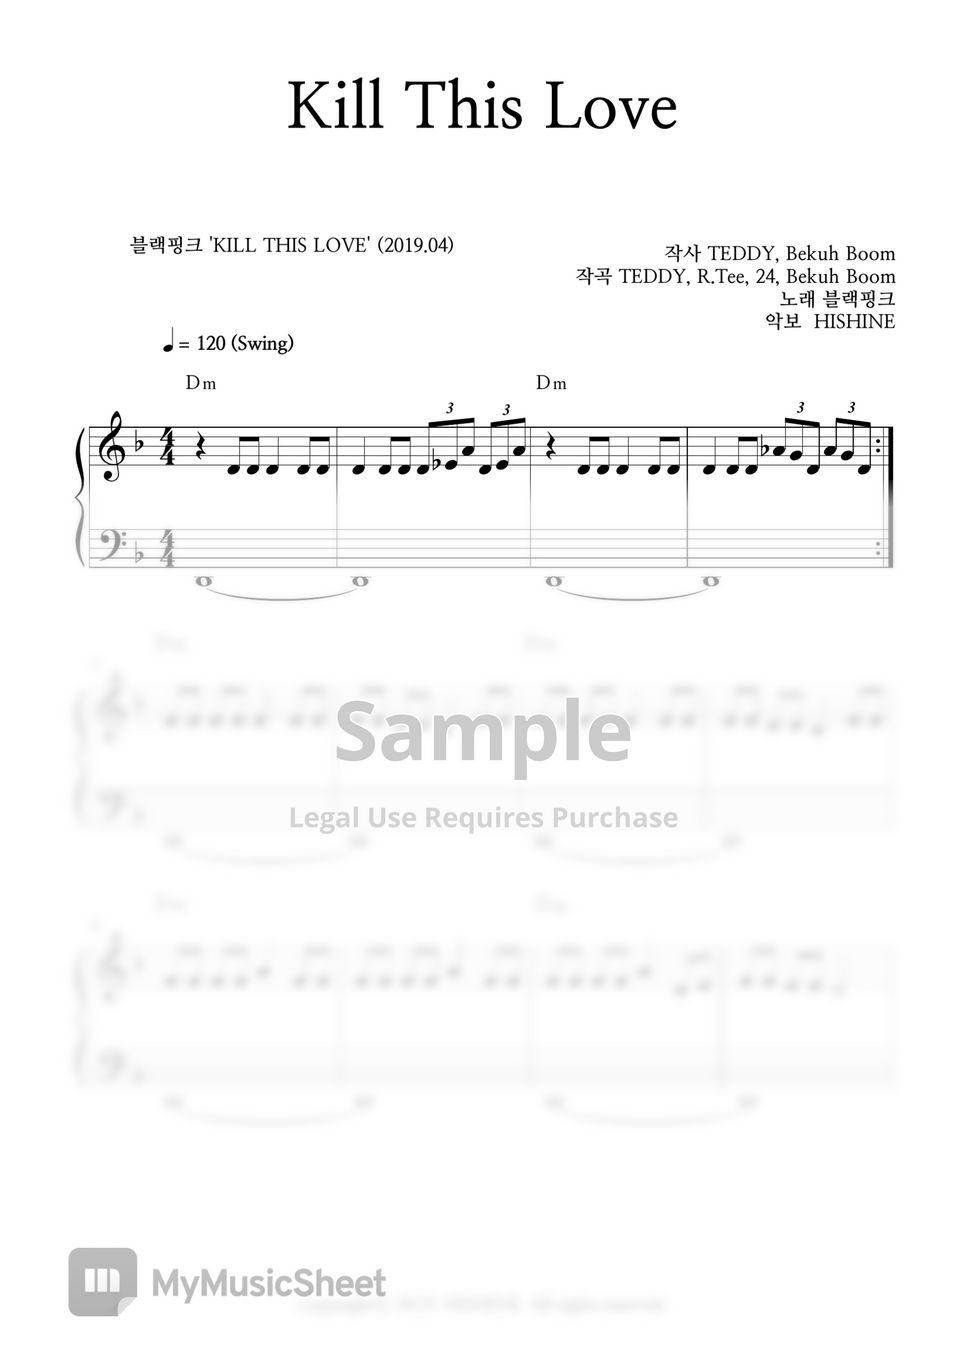 BLACKPINK - Kill This Love Easy Piano Sheet